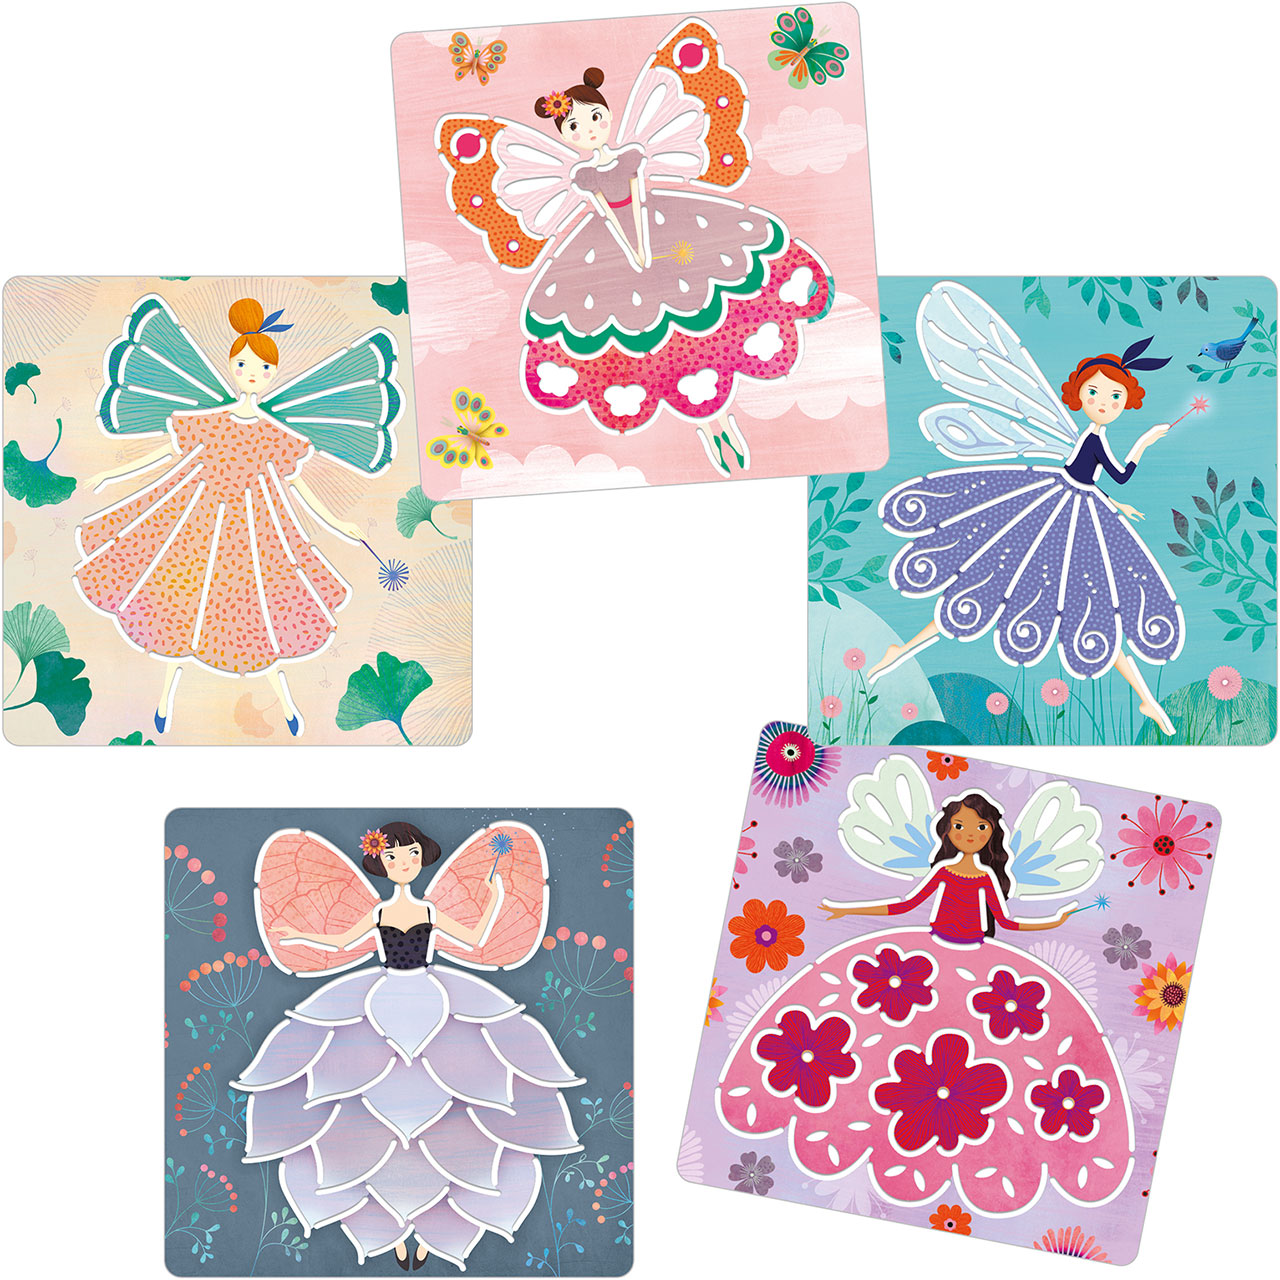 5 Flower Fairy Stencils